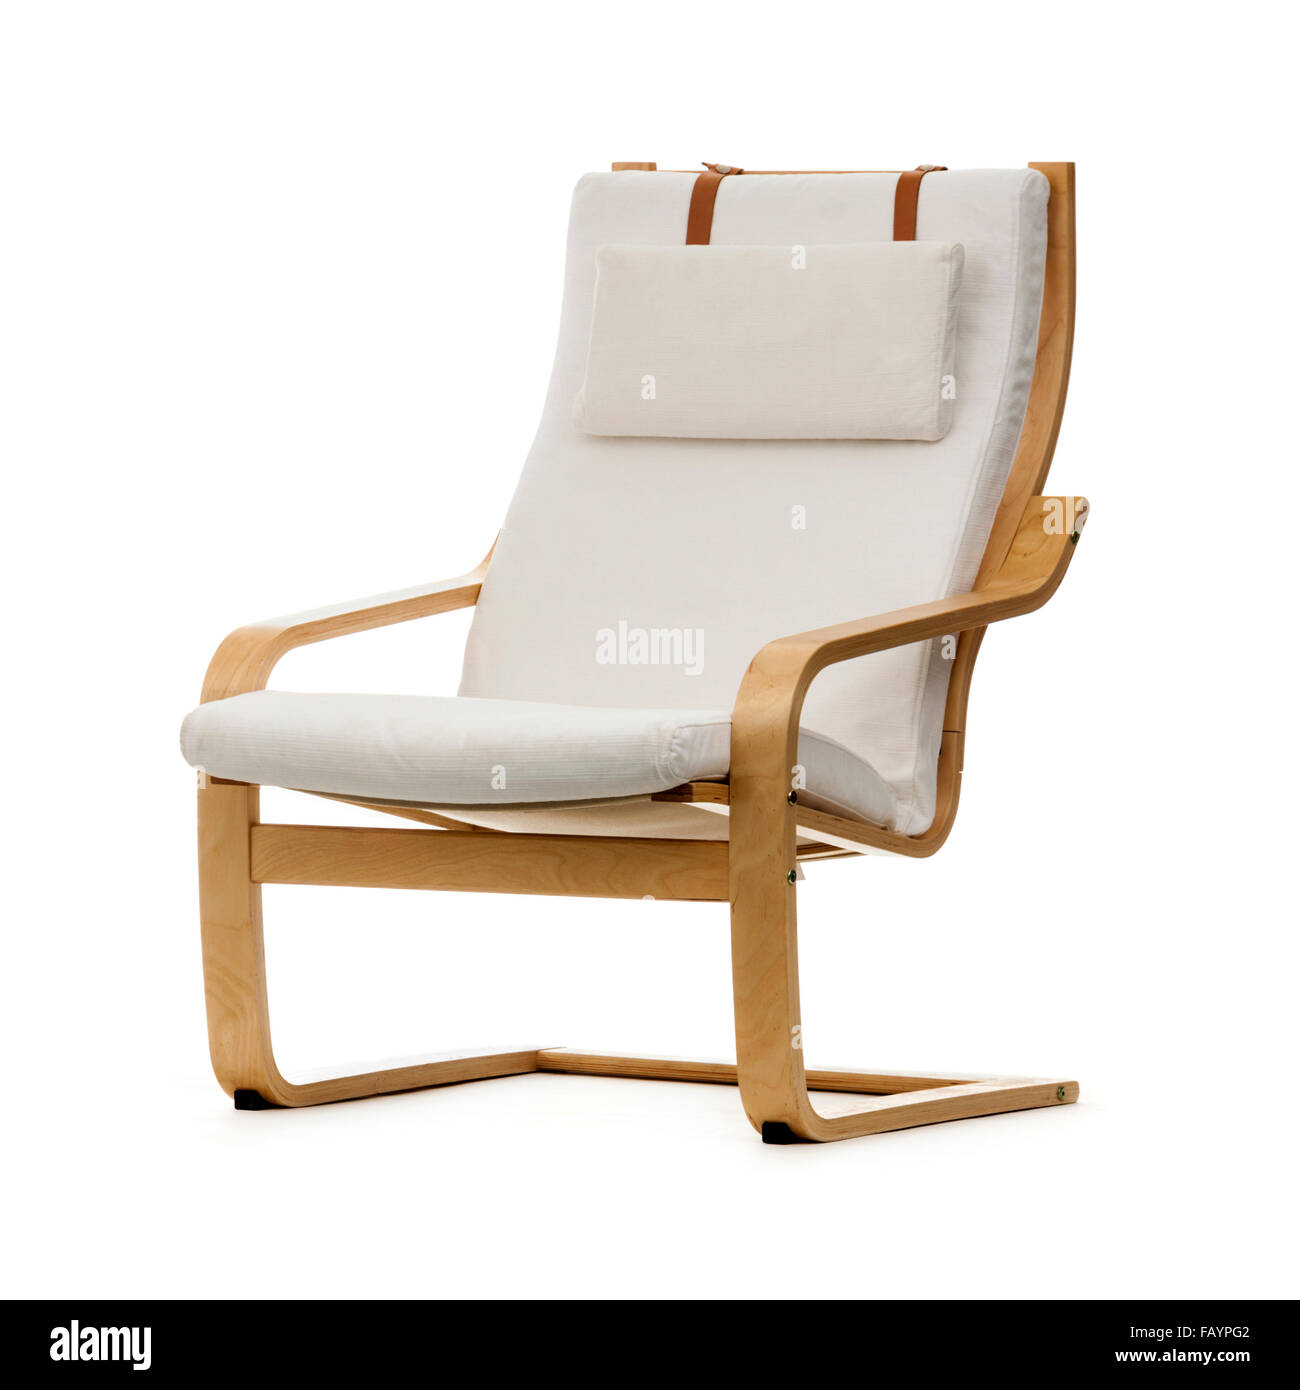 Ikea POÄNG fauteuil, introduit en 1977 comme le poème et renommé en 1992 POÄNG. C'est l'un de ses modèles emblématiques. Banque D'Images